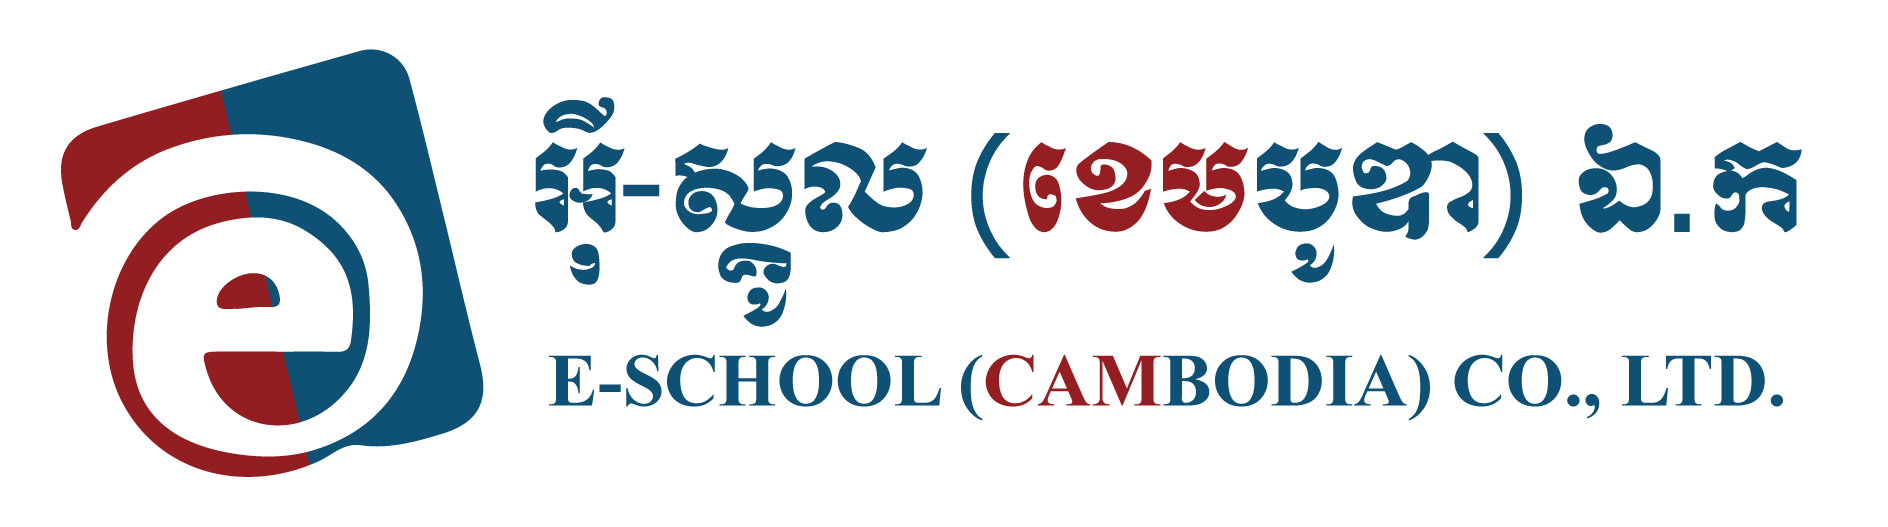 New_E-School_Logo